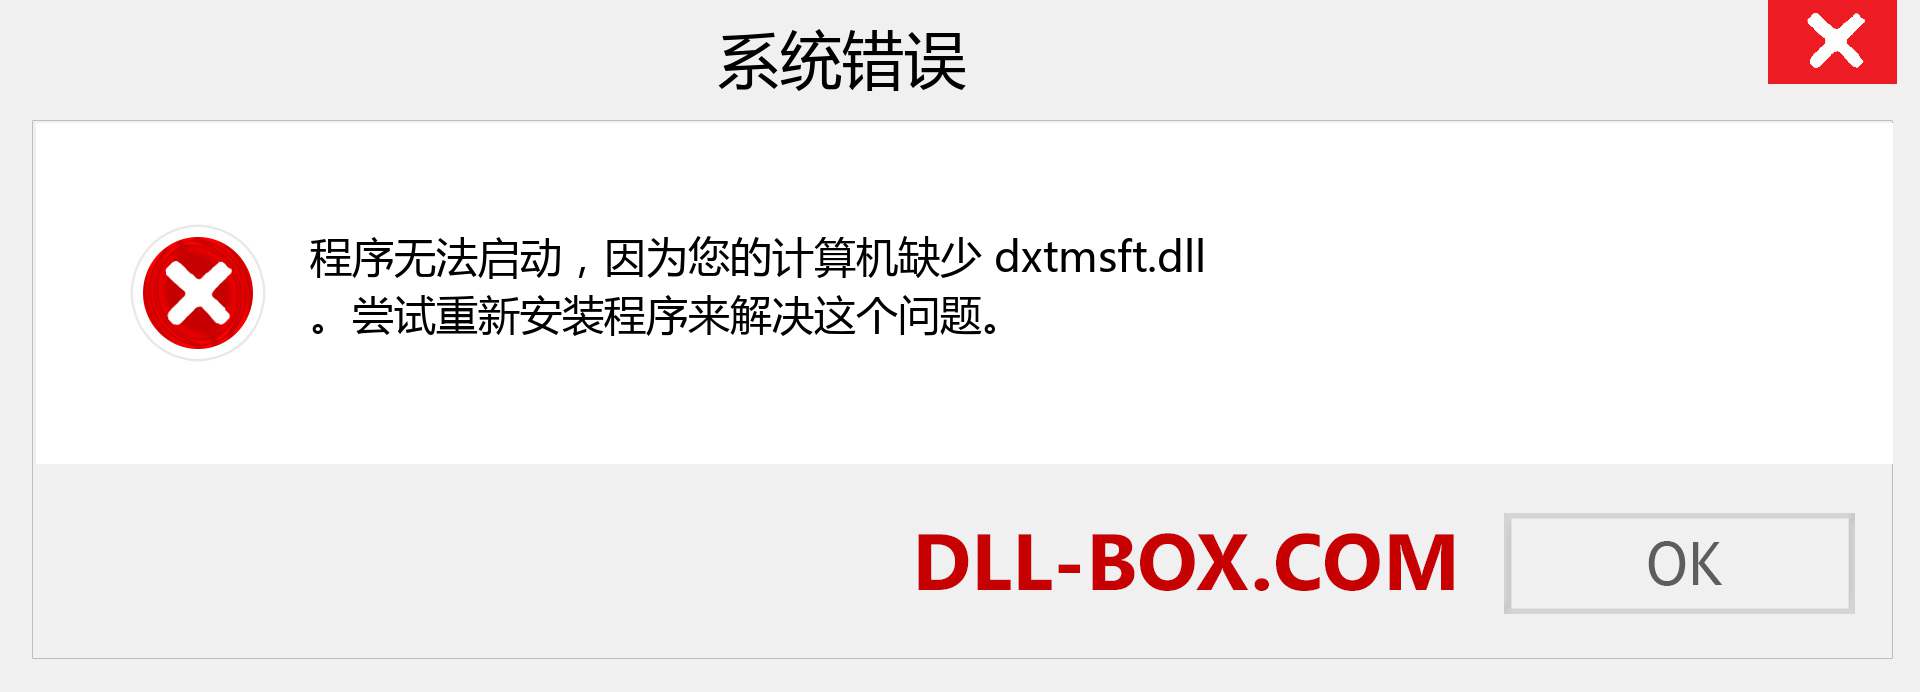 dxtmsft.dll 文件丢失？。 适用于 Windows 7、8、10 的下载 - 修复 Windows、照片、图像上的 dxtmsft dll 丢失错误